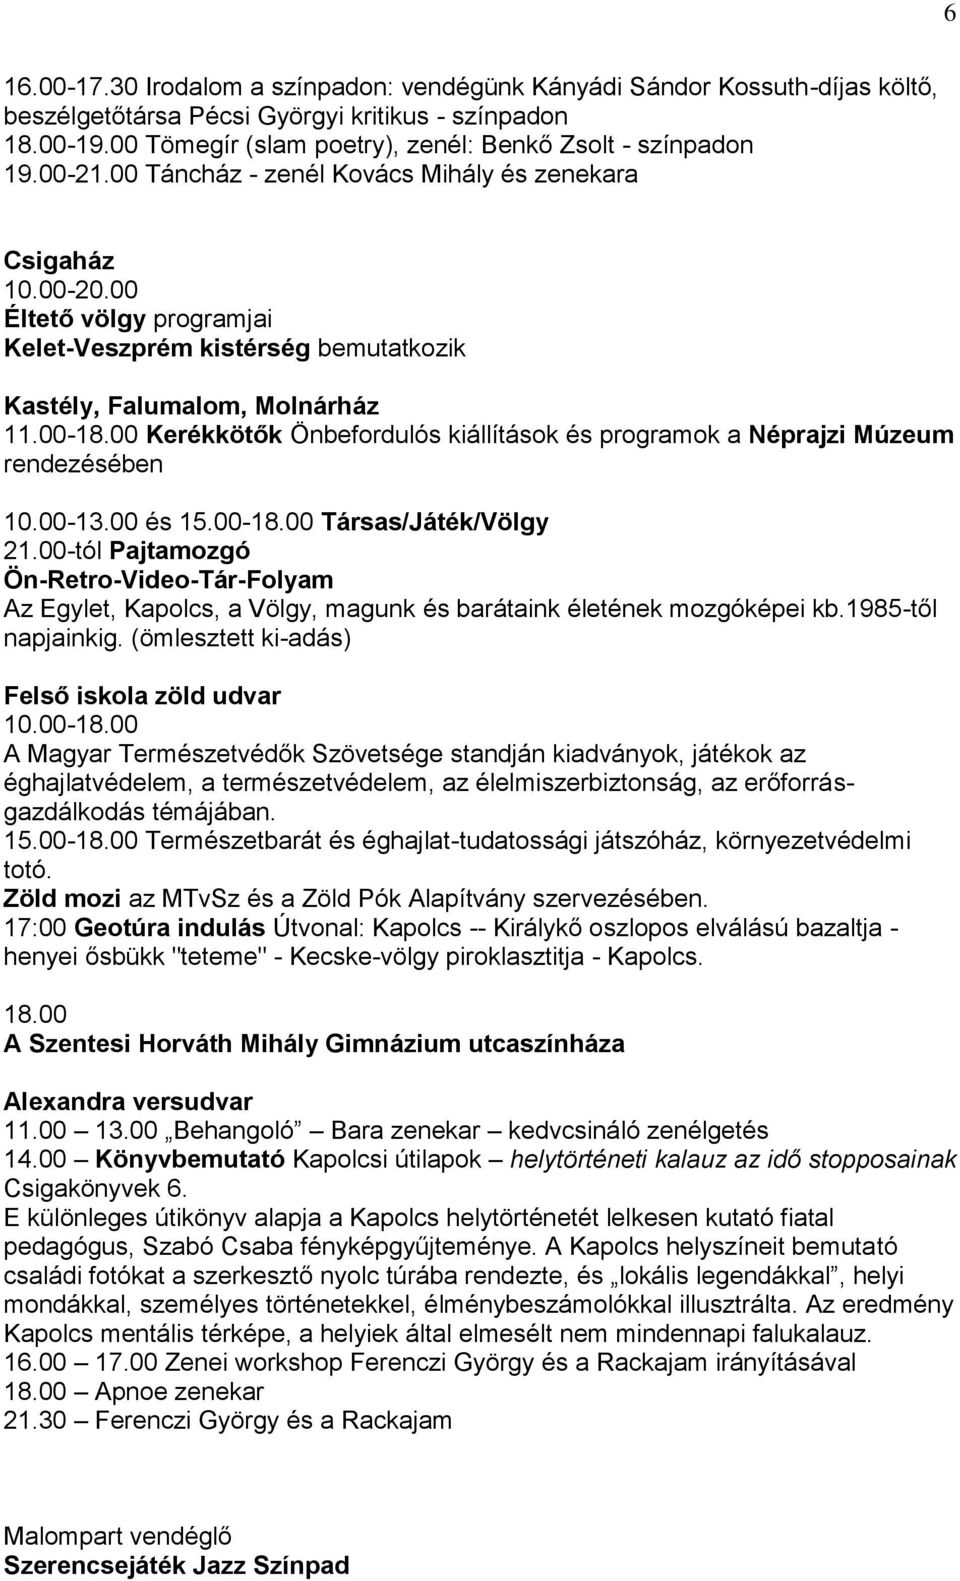 00 Éltető völgy programjai Kelet-Veszprém kistérség bemutatkozik Kastély, Falumalom, Molnárház 11.00-18.00 Kerékkötők Önbefordulós kiállítások és programok a Néprajzi Múzeum rendezésében 10.00-13.